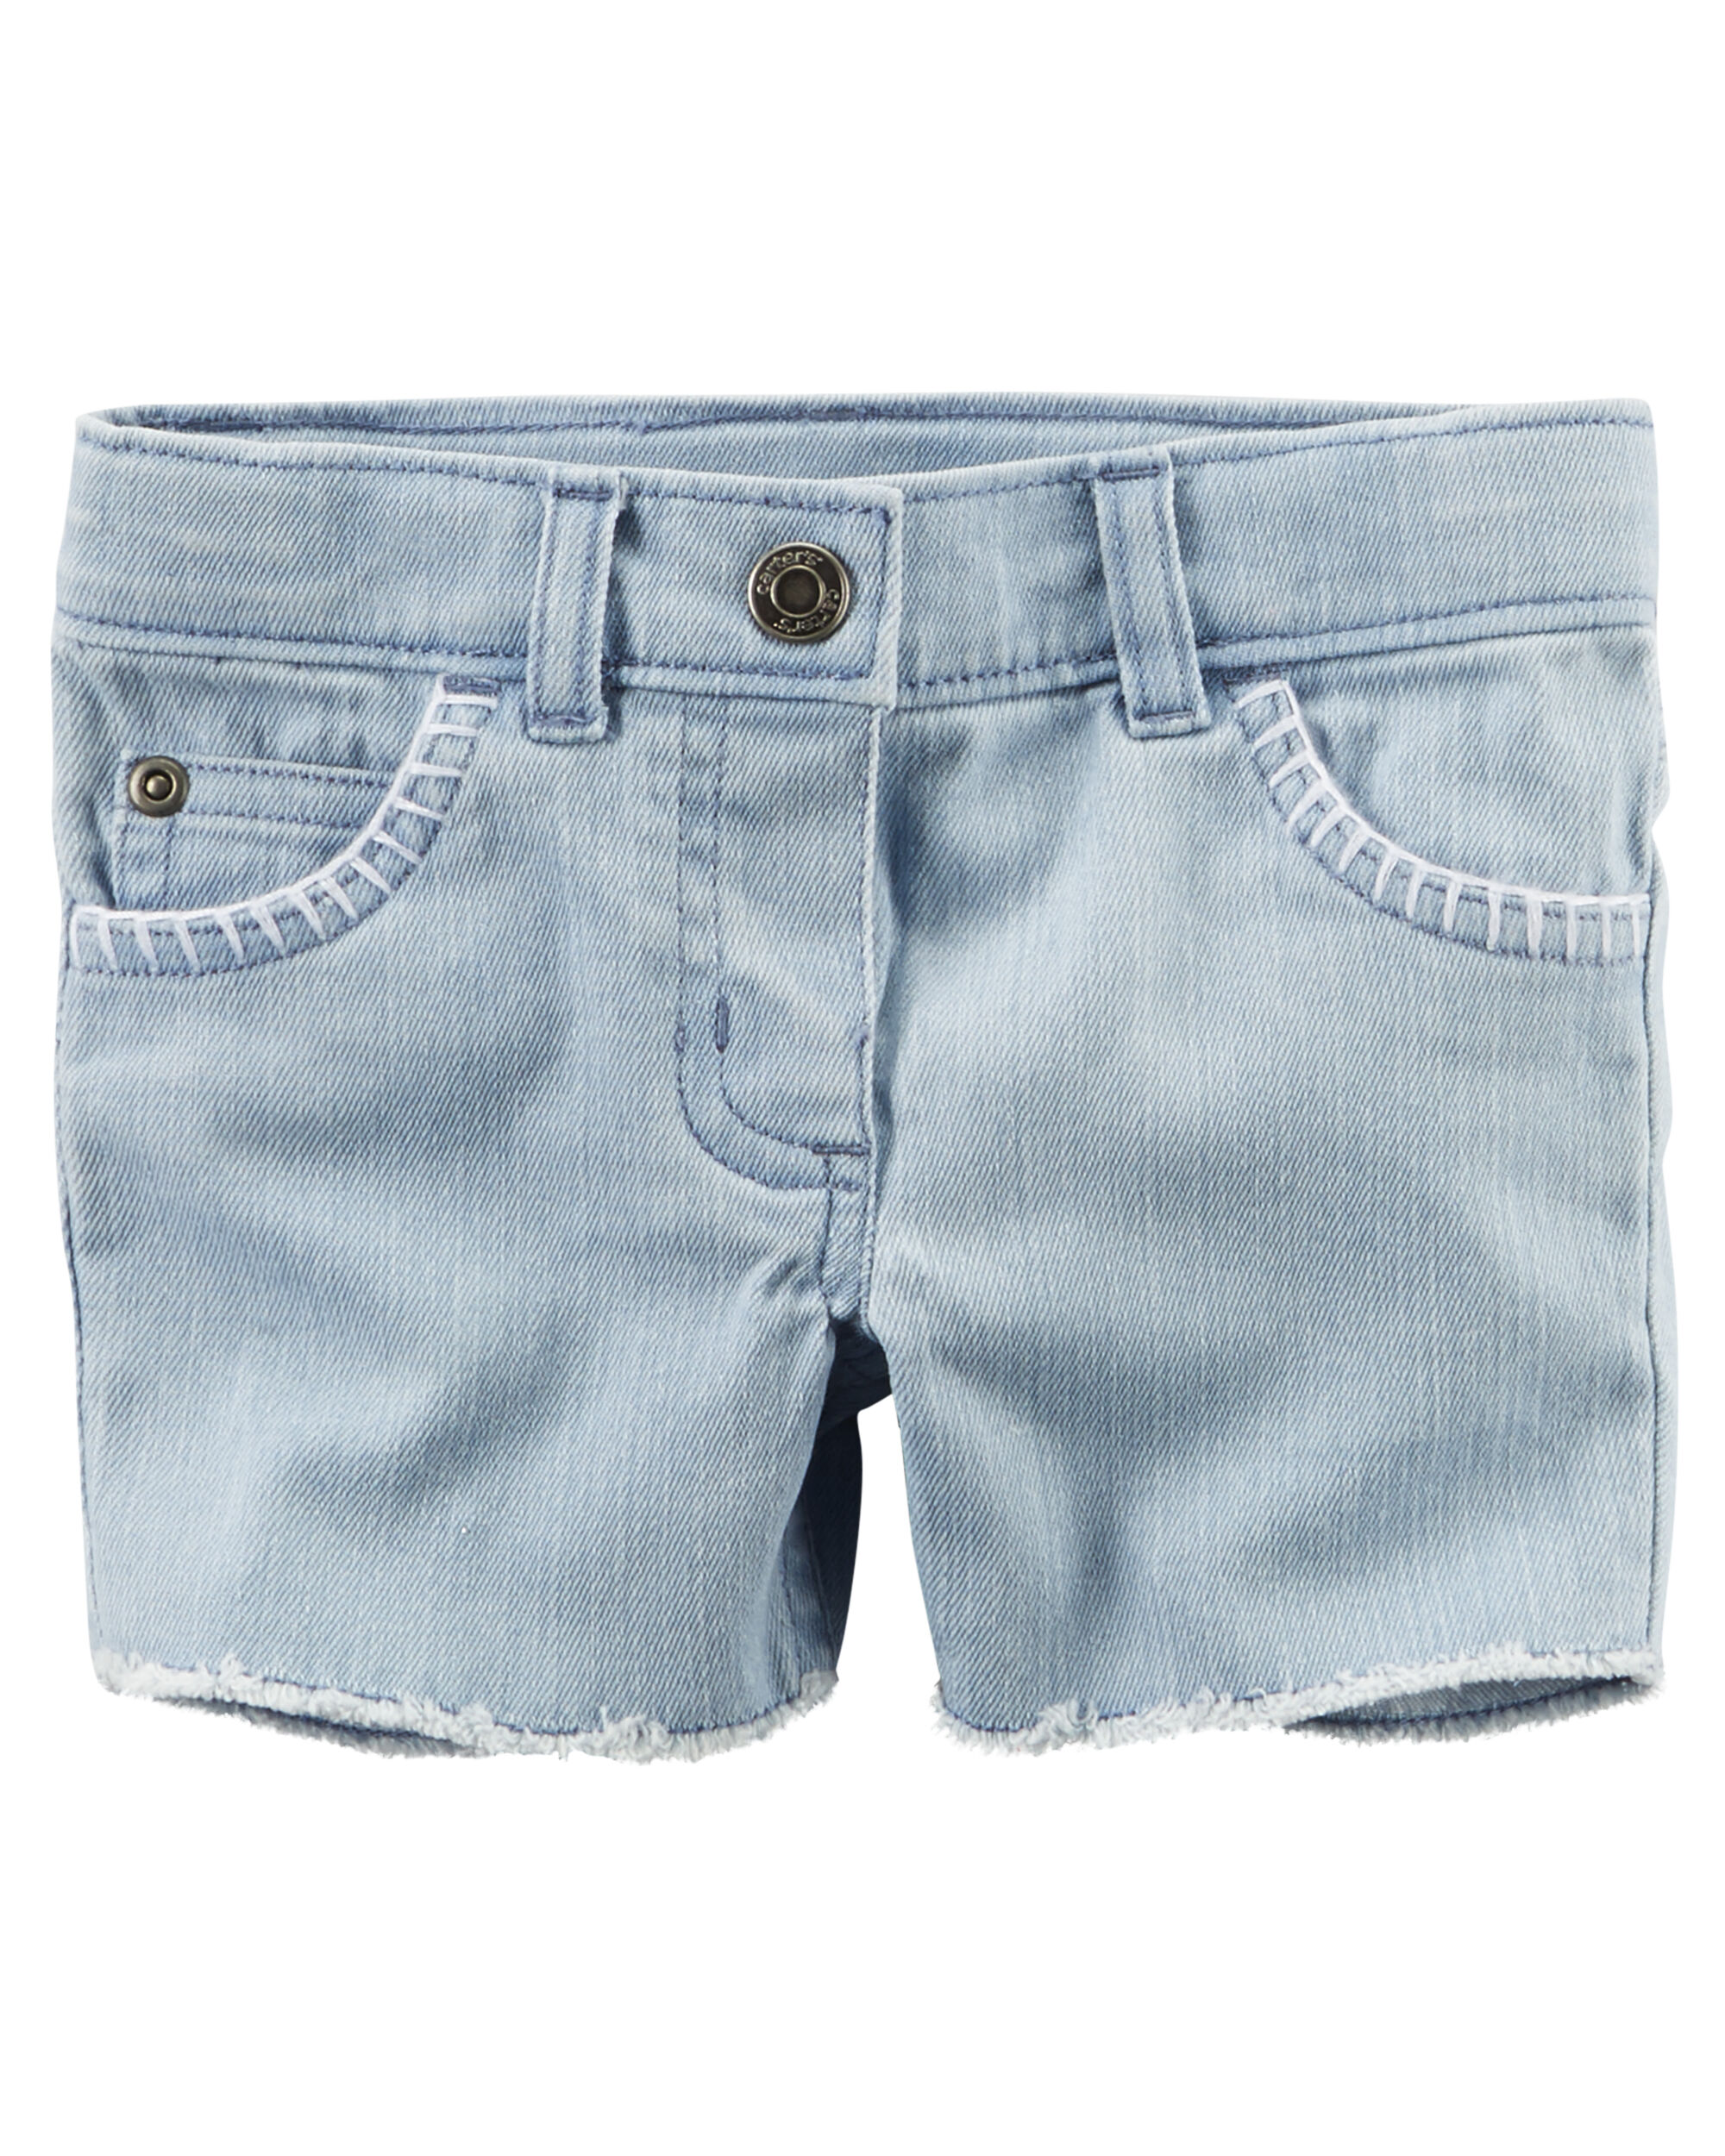 Cut-Off Denim Shorts | Carters.com